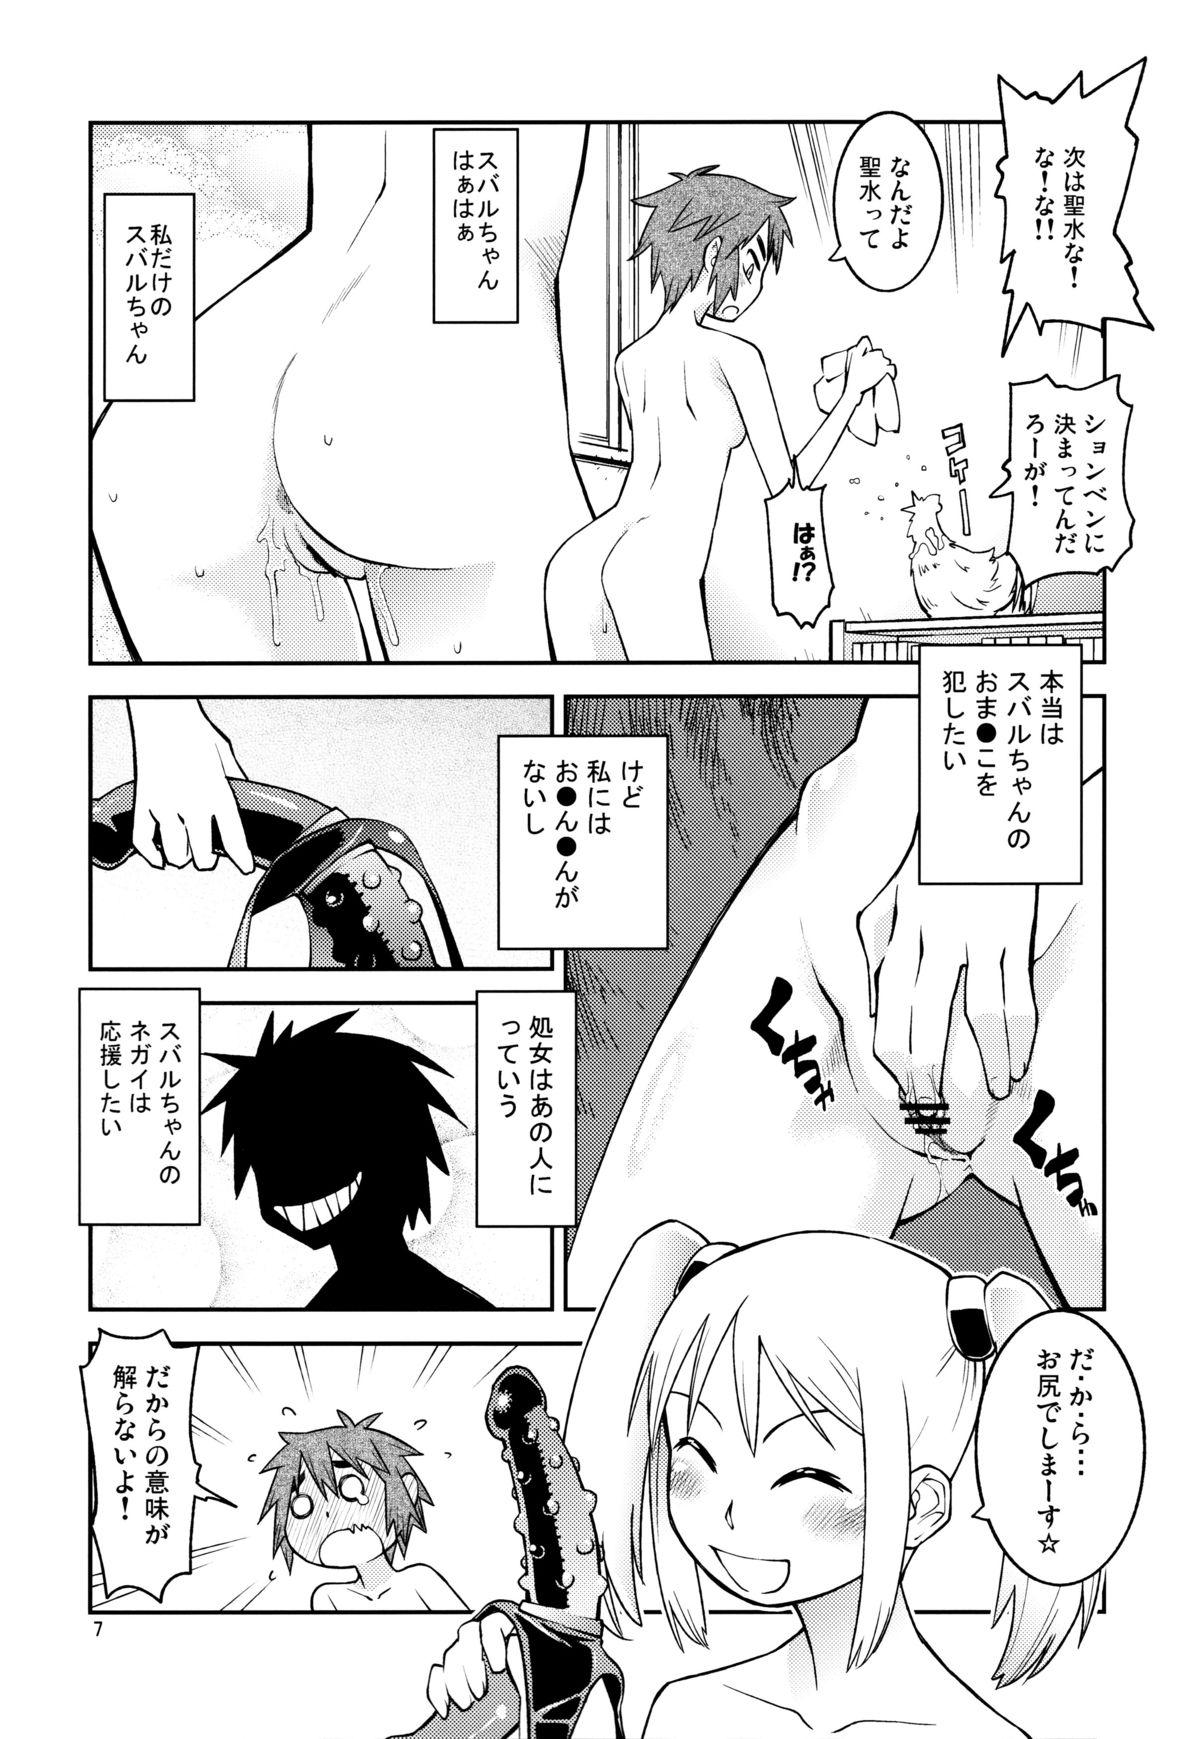 Pegging Yuki × Suba - Hoshi no samidare Brunet - Page 6